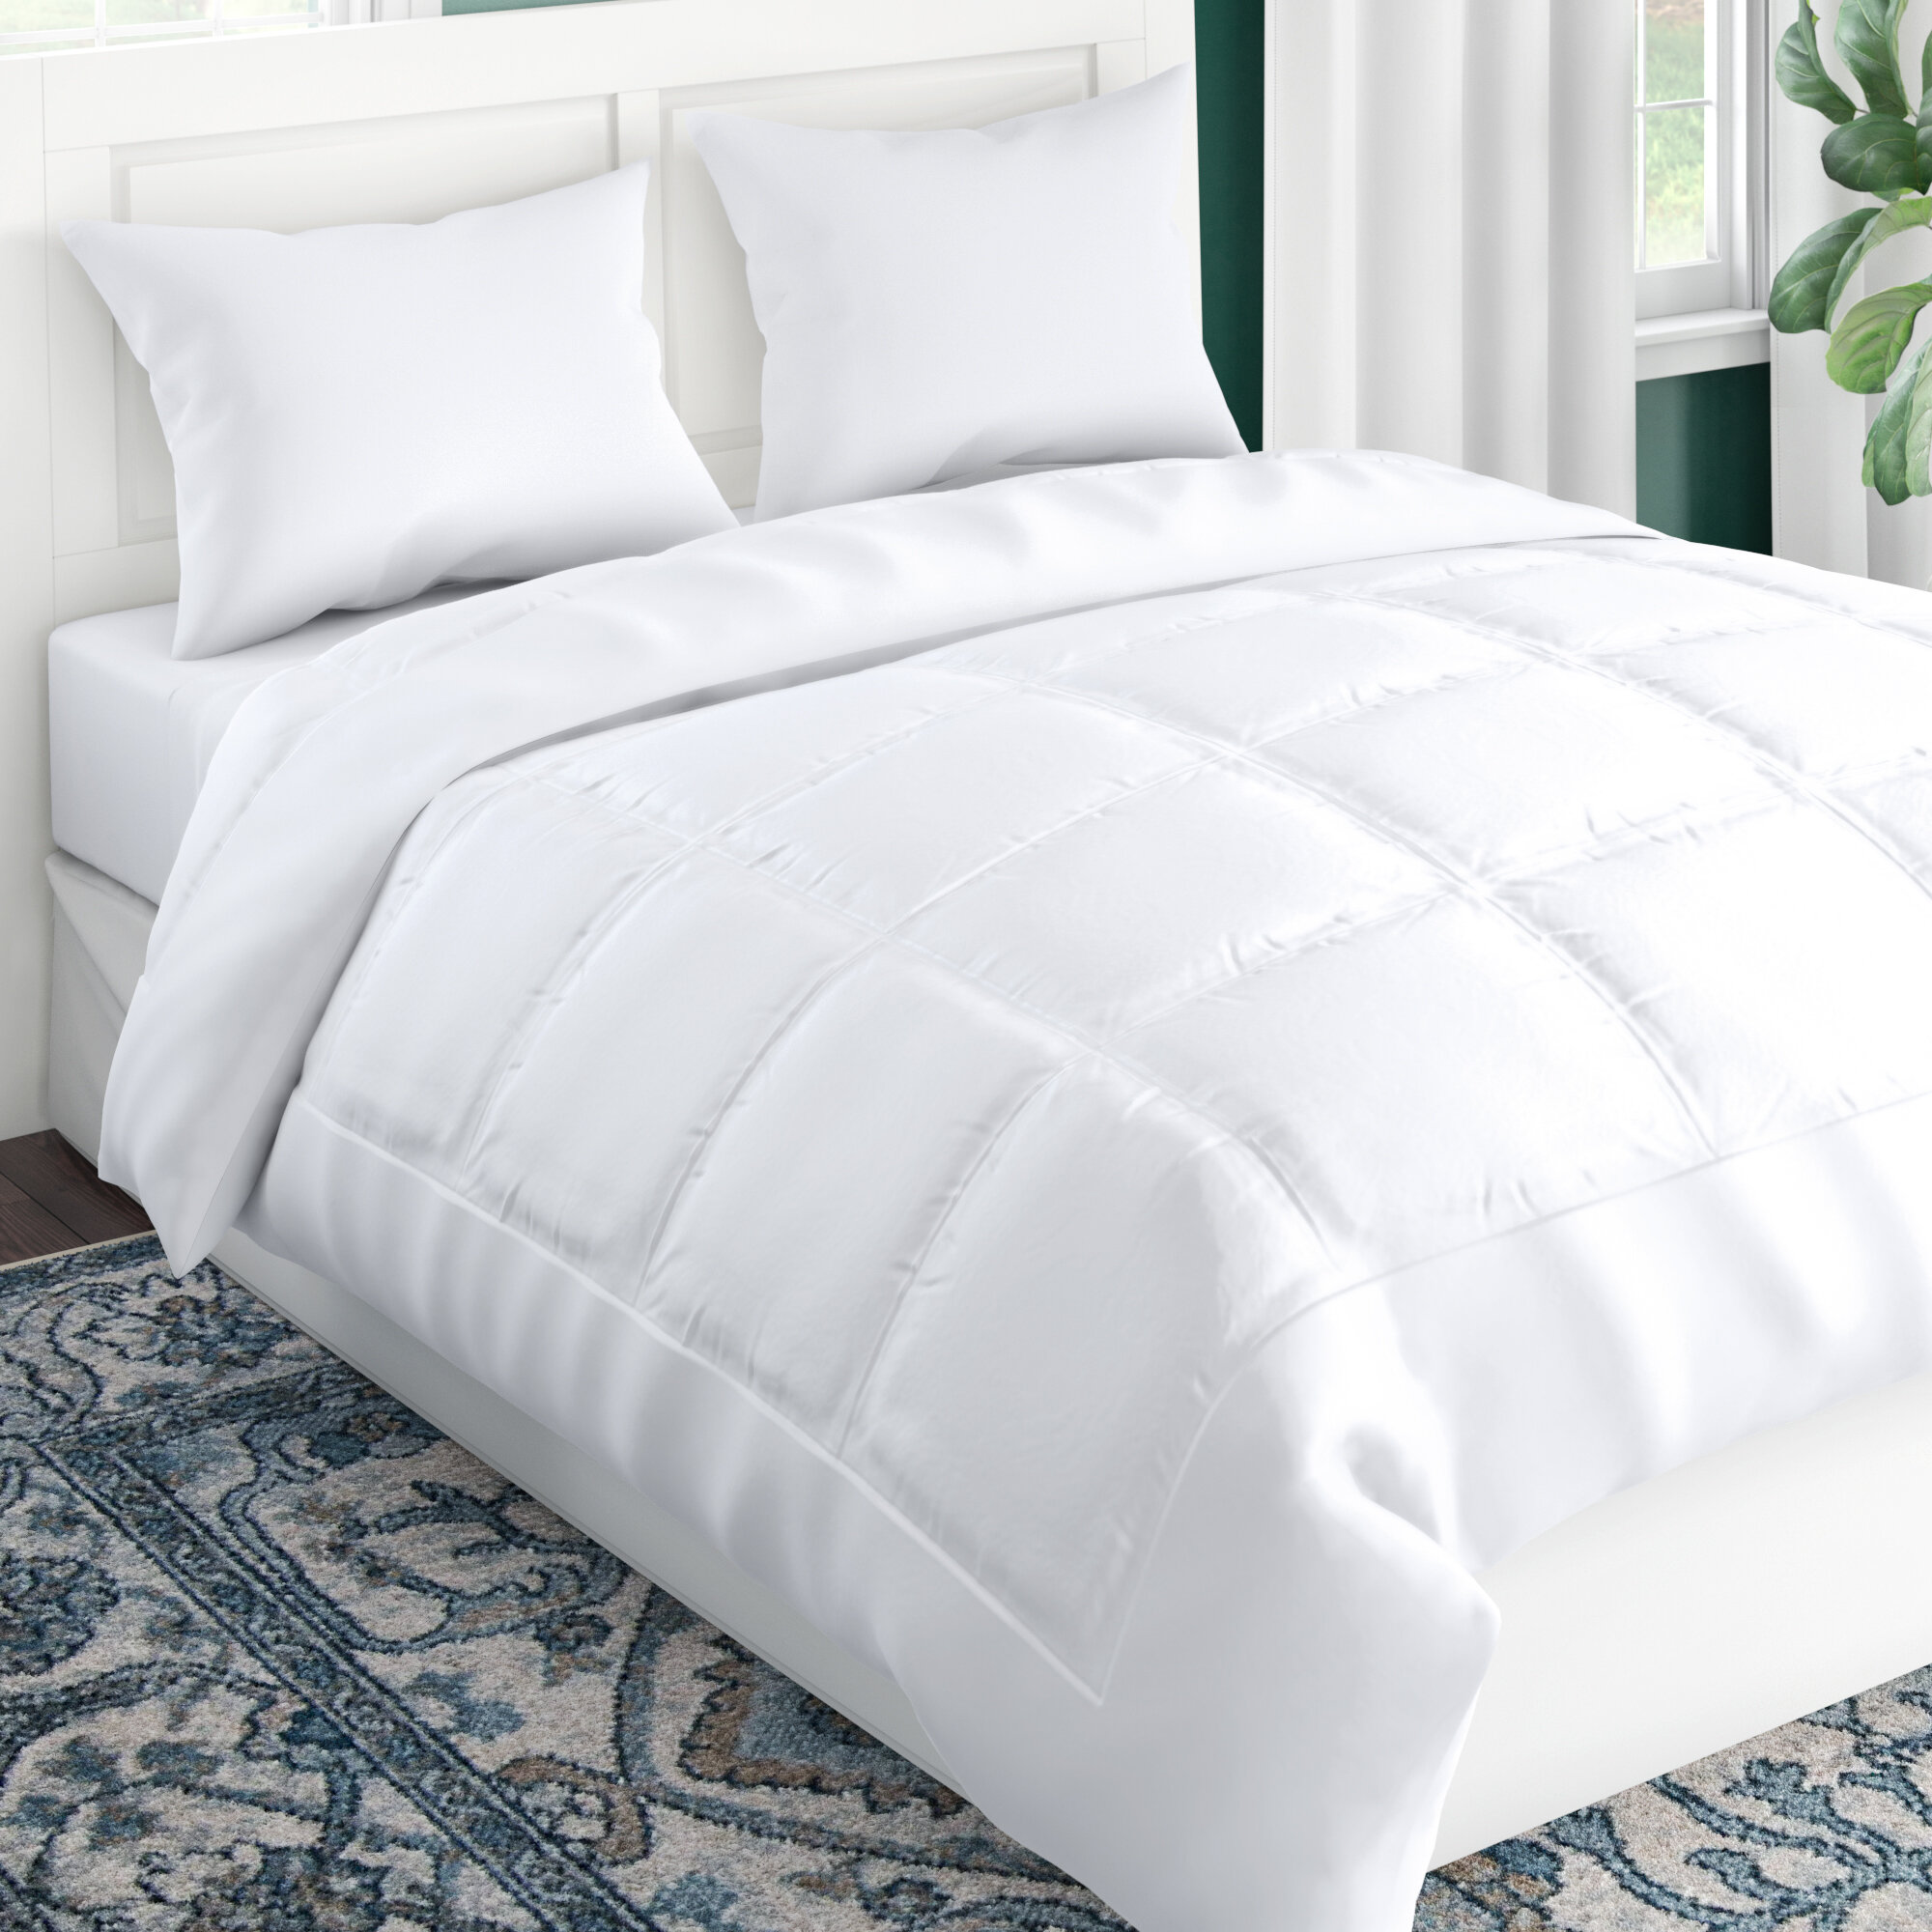 Bedding 101 How To Pick The Best Down Comforter Wayfair